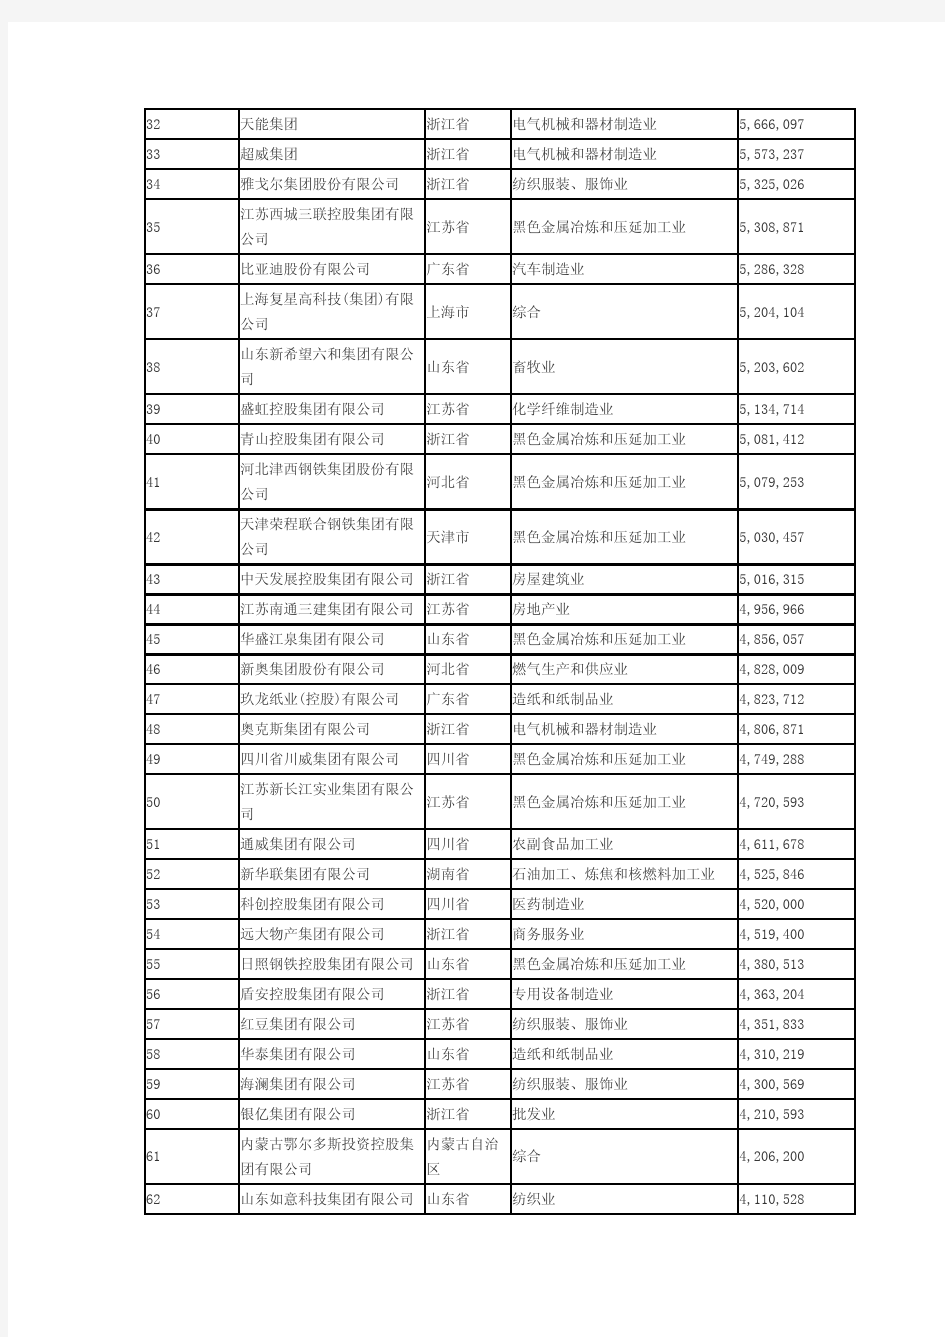 2014中国民营企业500强全部名单